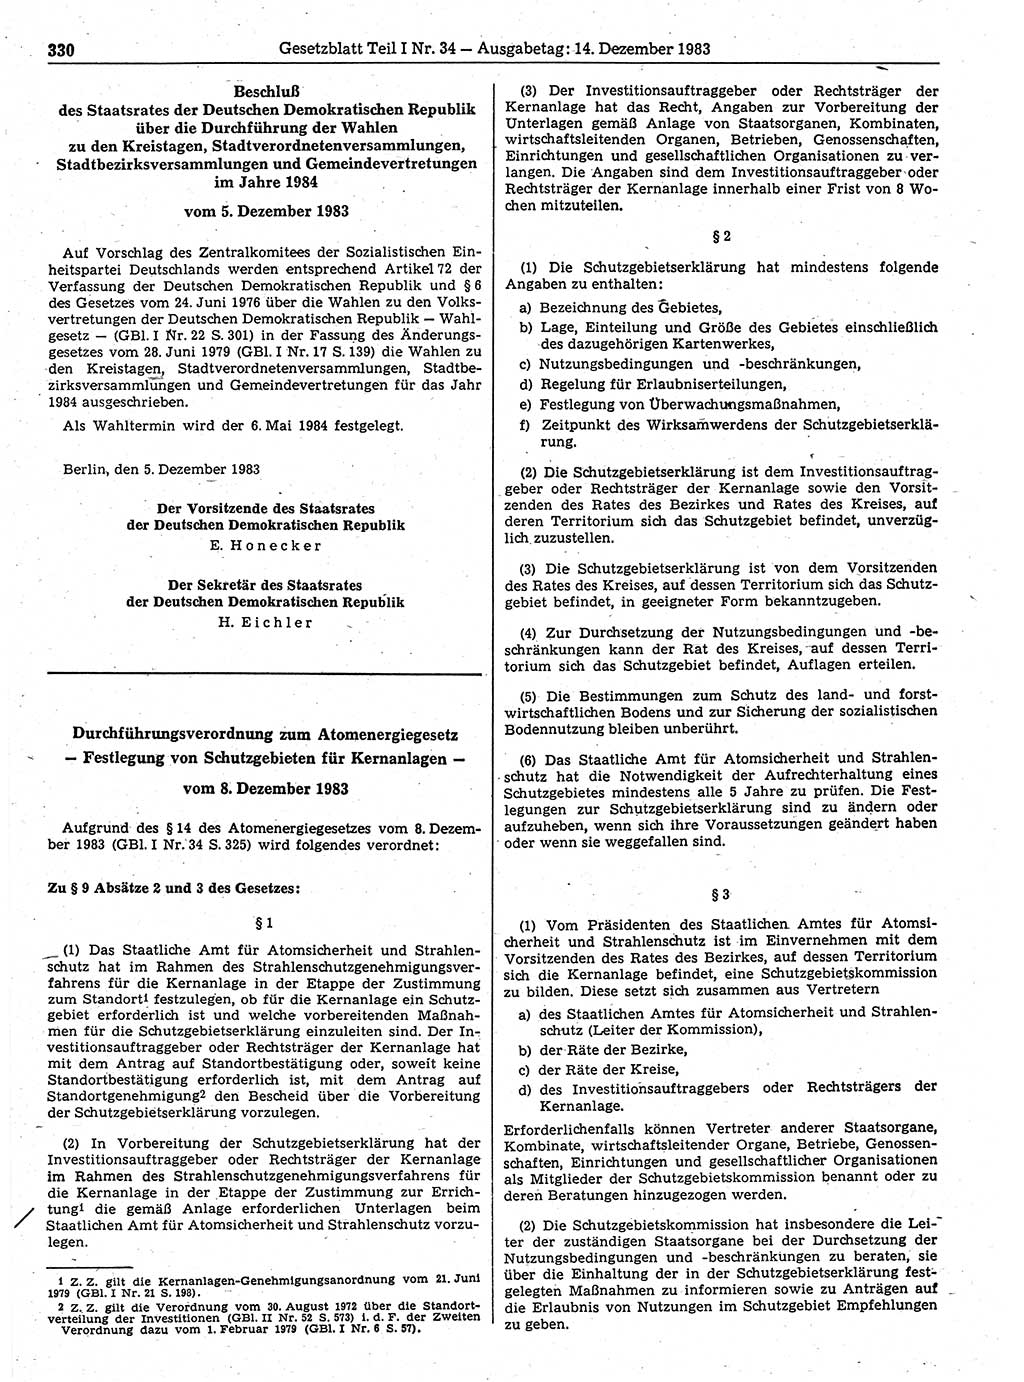 Gesetzblatt (GBl.) der Deutschen Demokratischen Republik (DDR) Teil Ⅰ 1983, Seite 330 (GBl. DDR Ⅰ 1983, S. 330)